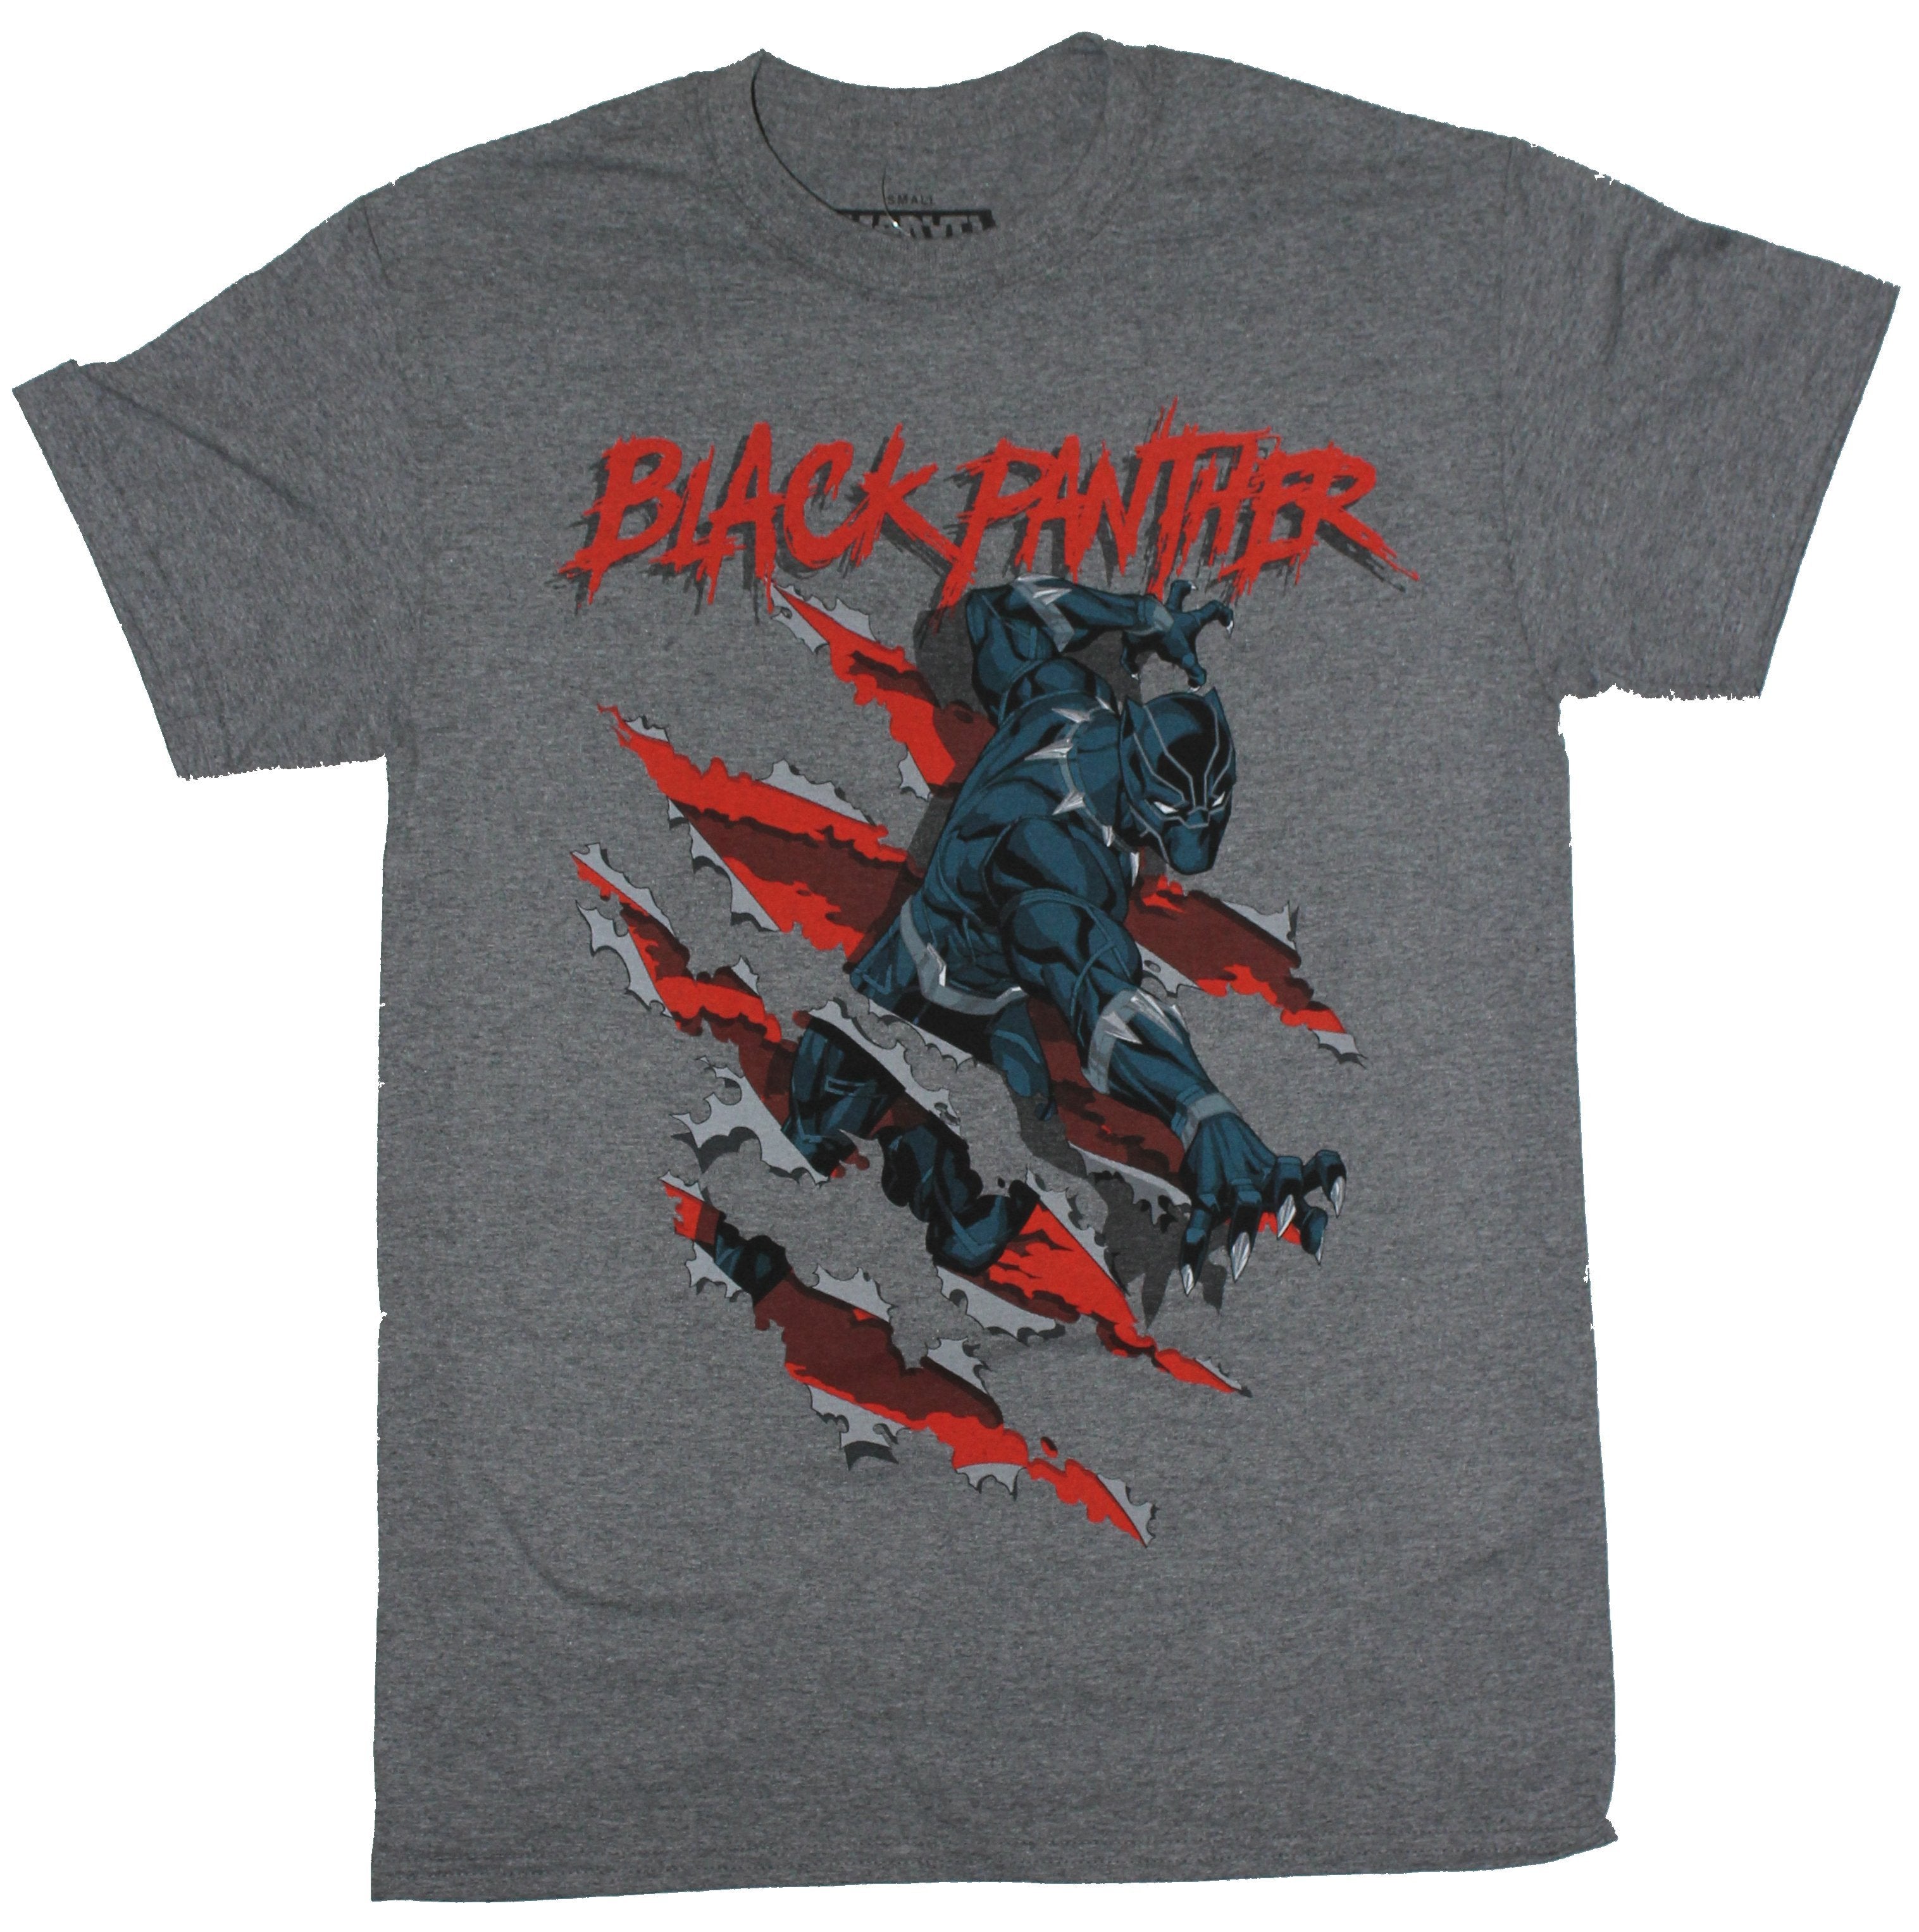 Black Panther (Marvel) Mens T-Shirt - Slashing Panther Under Name Image